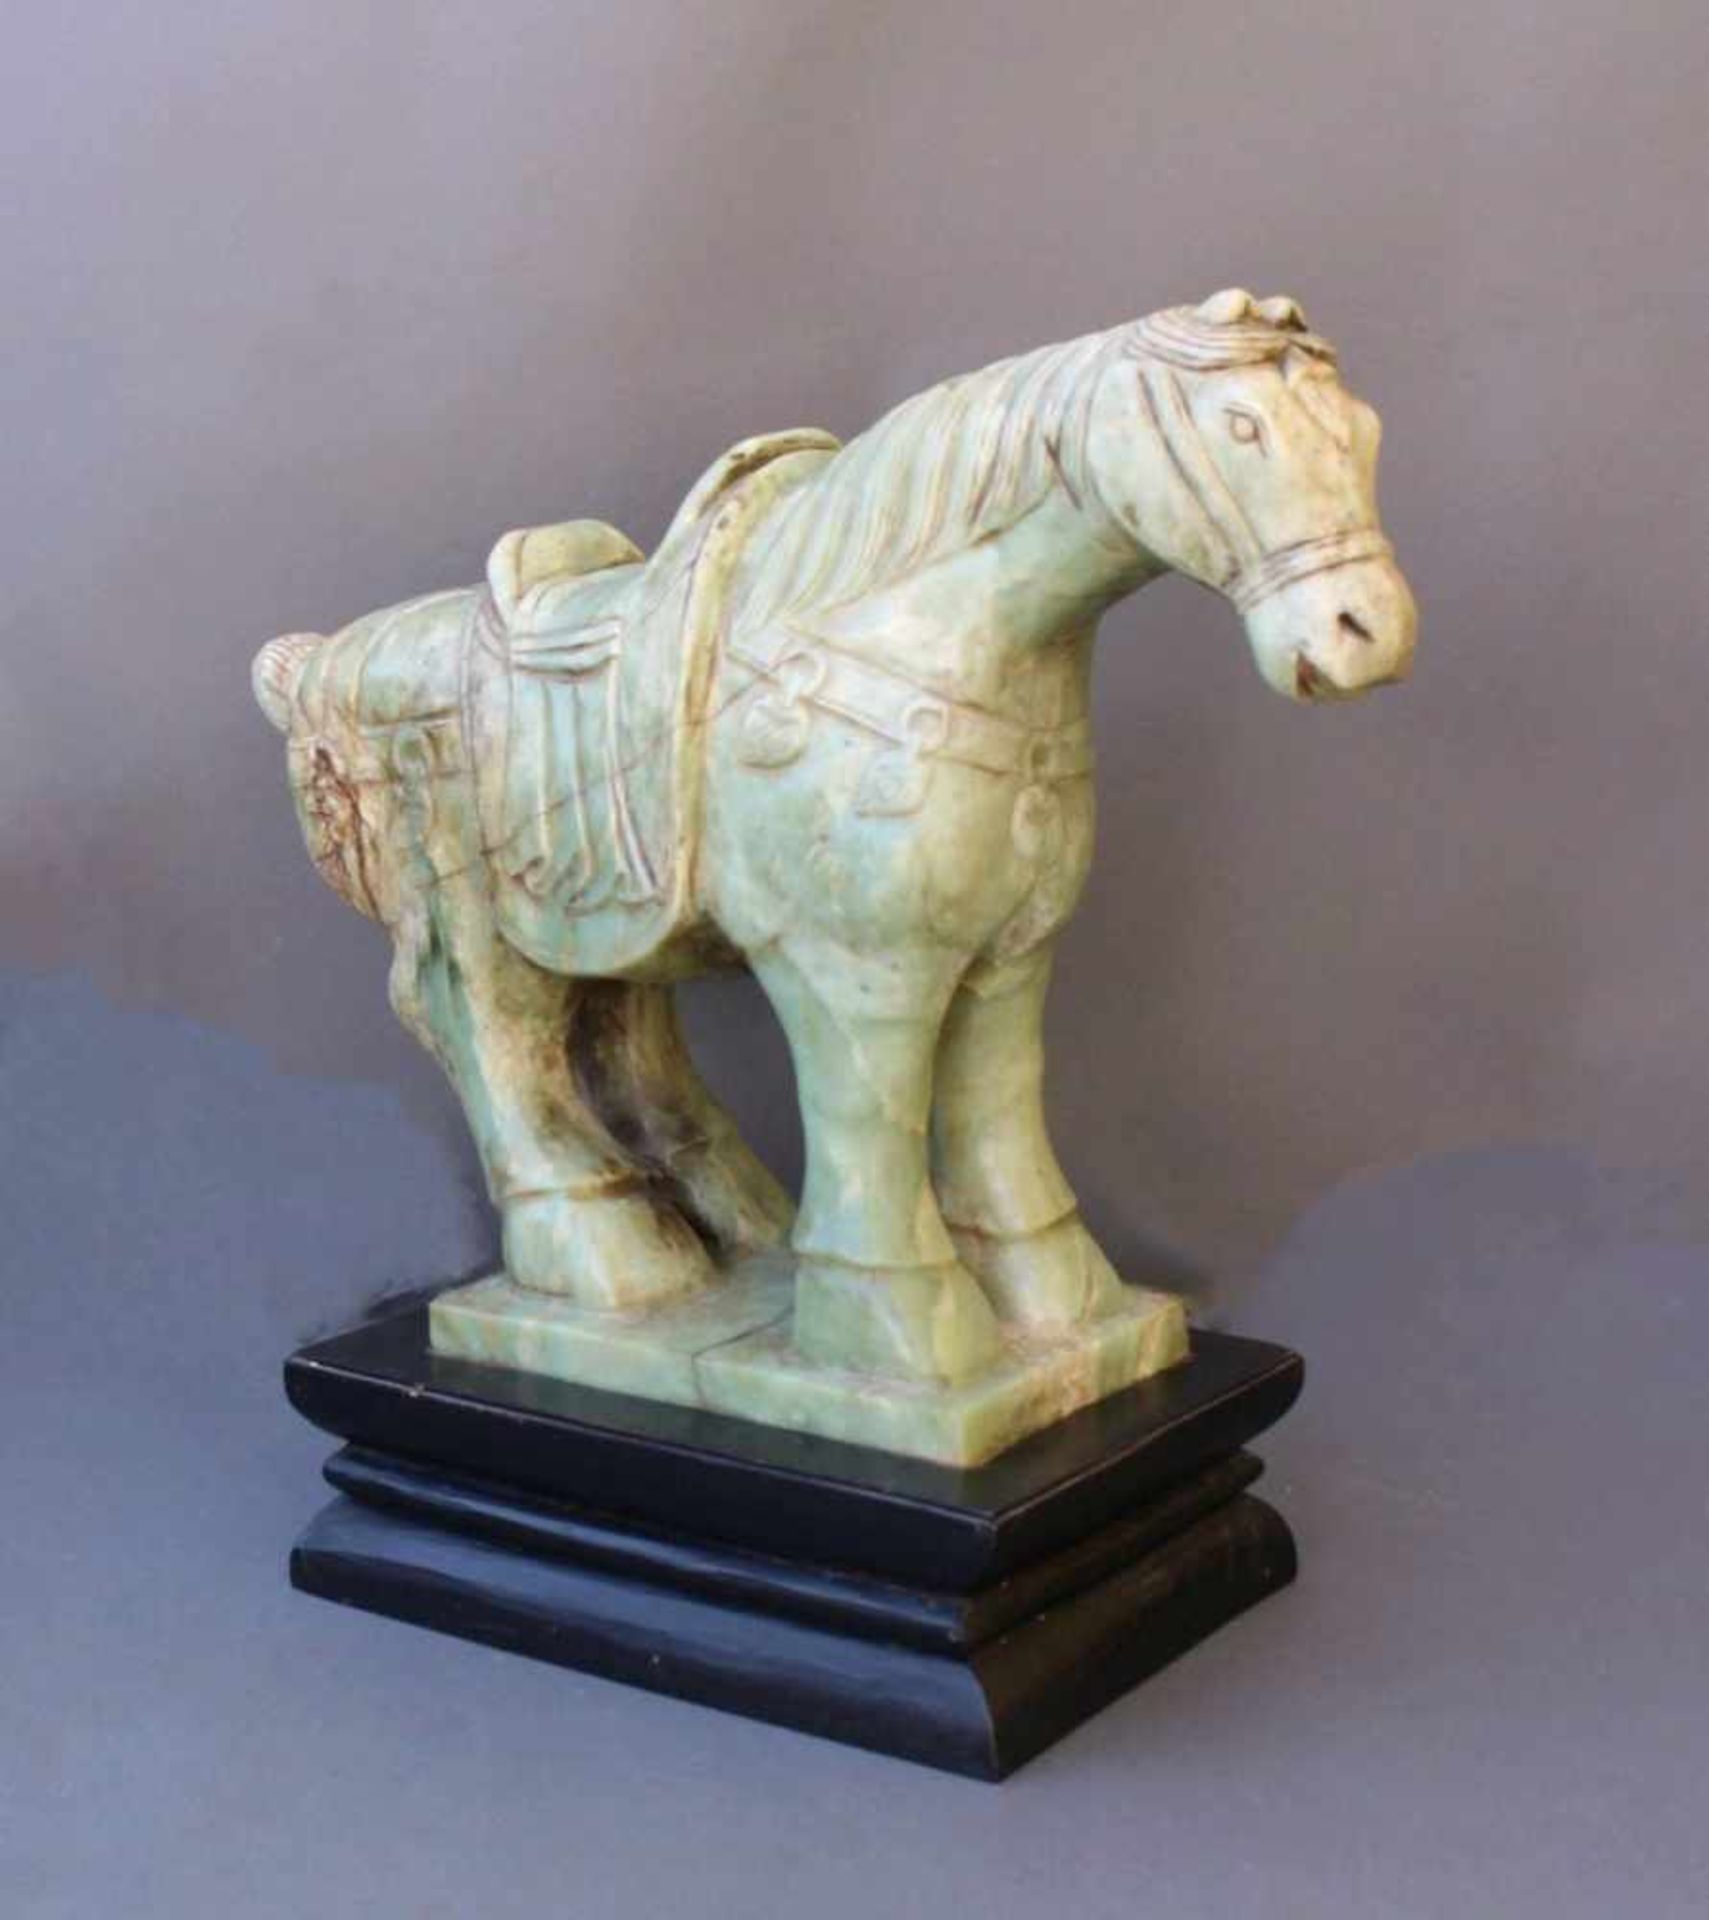 Sehr große Pferdefigur, Serpentin-JadeChina, 20. Jahrhundert, vollplastisch gearbeitetes Pferd